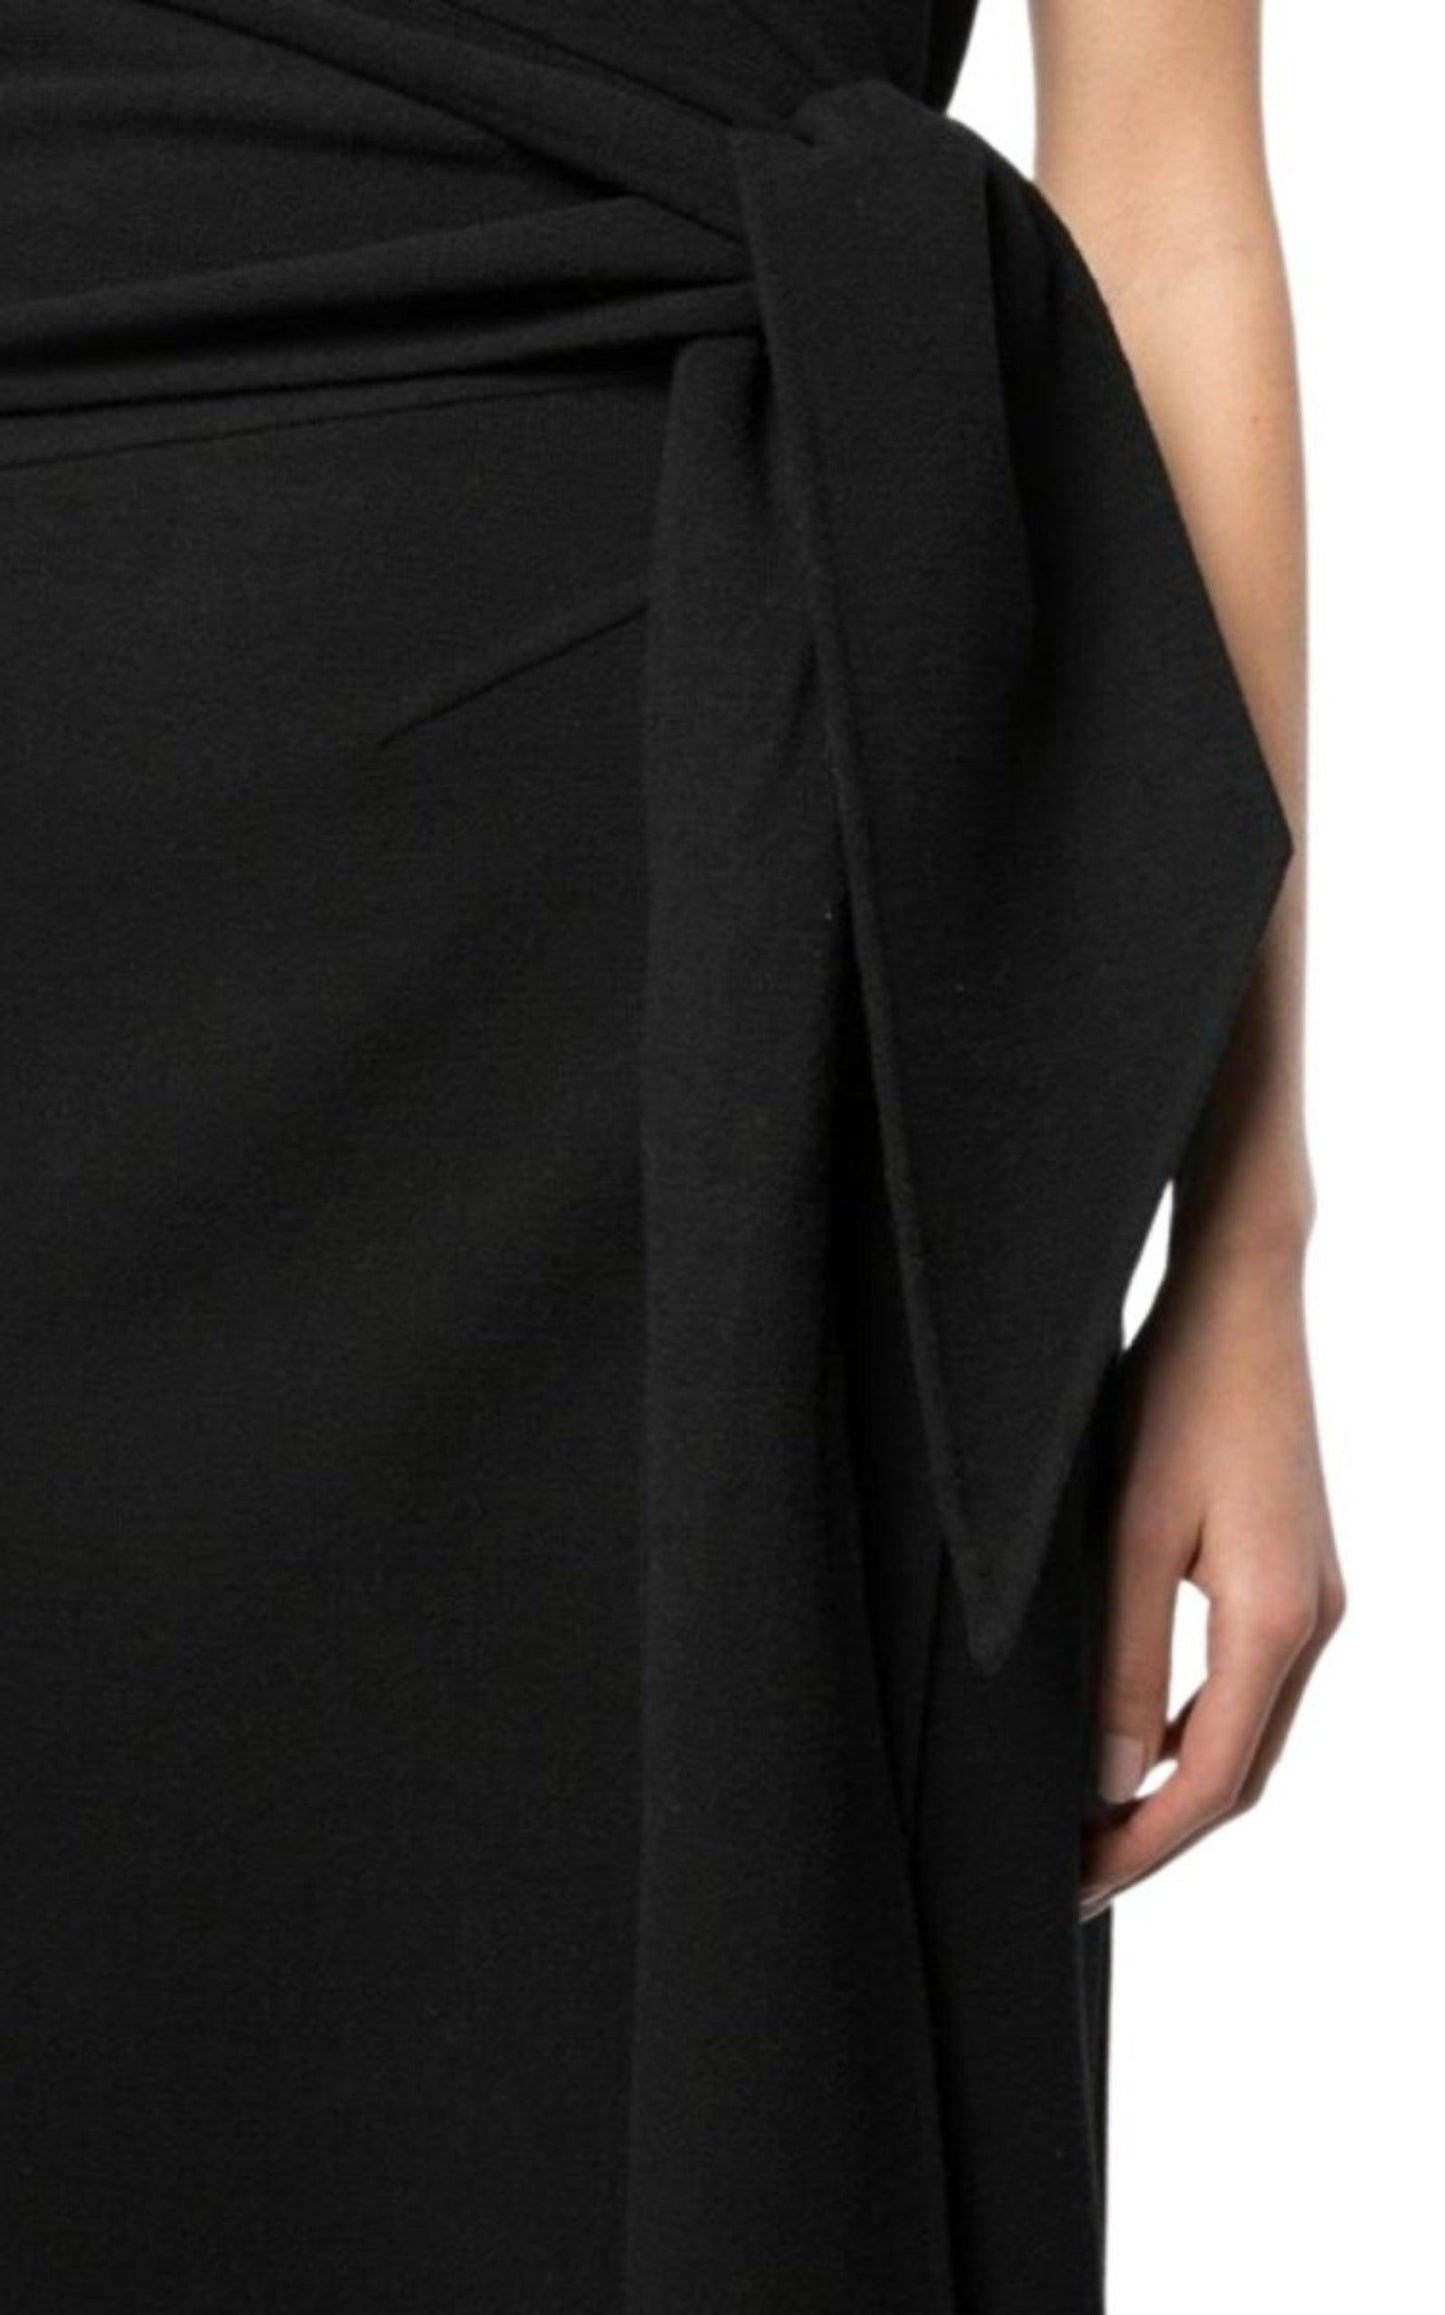 Black Front Slit Cocktail Dress